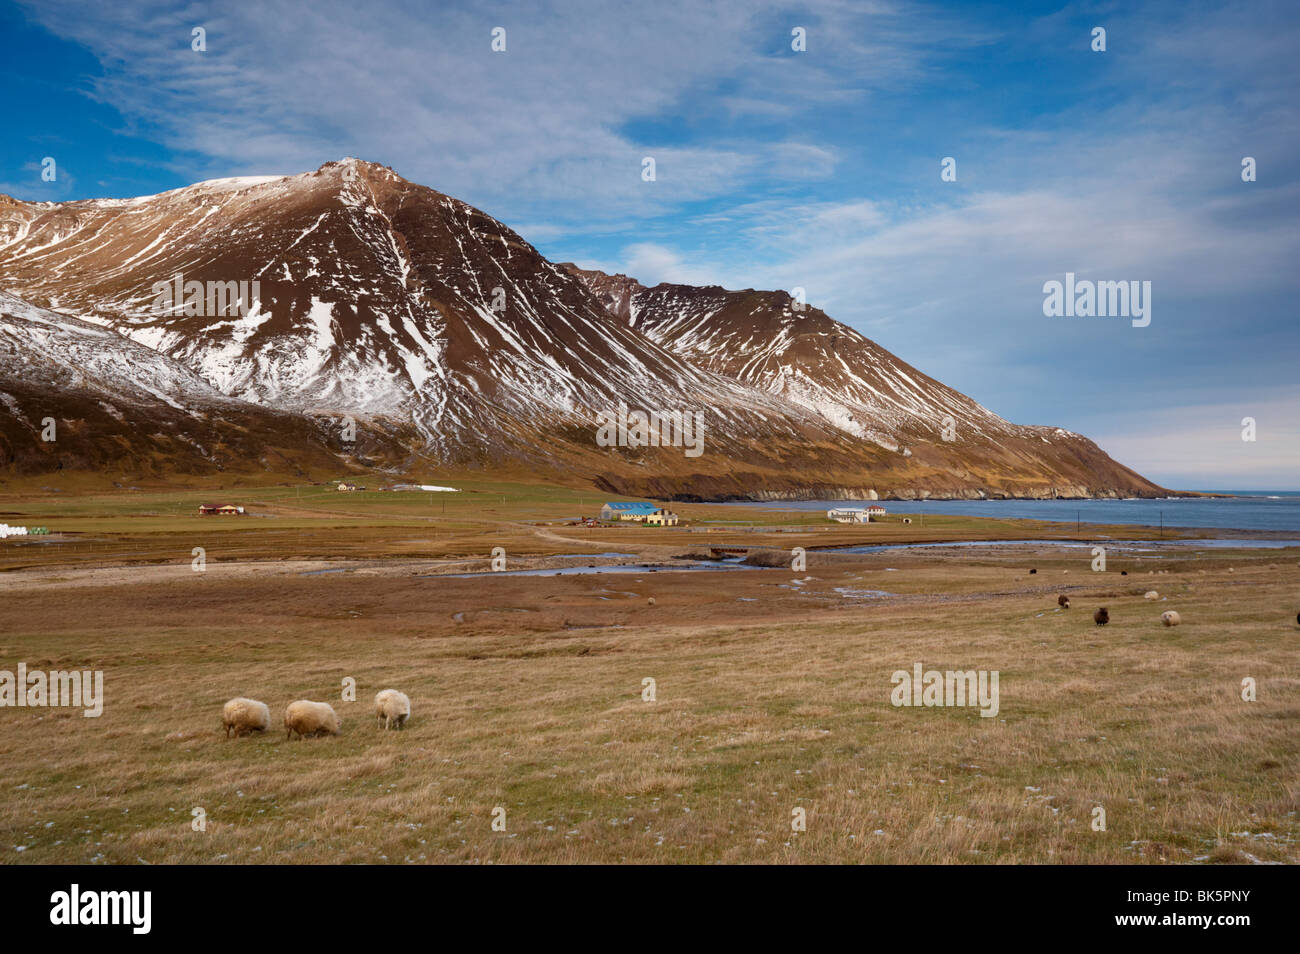 Fermes et de moutons en Njardvik, vallée de Borgarfjordur Eystri fjord dans la distance, Fjords de l'Est, l'Islande, les régions polaires Banque D'Images